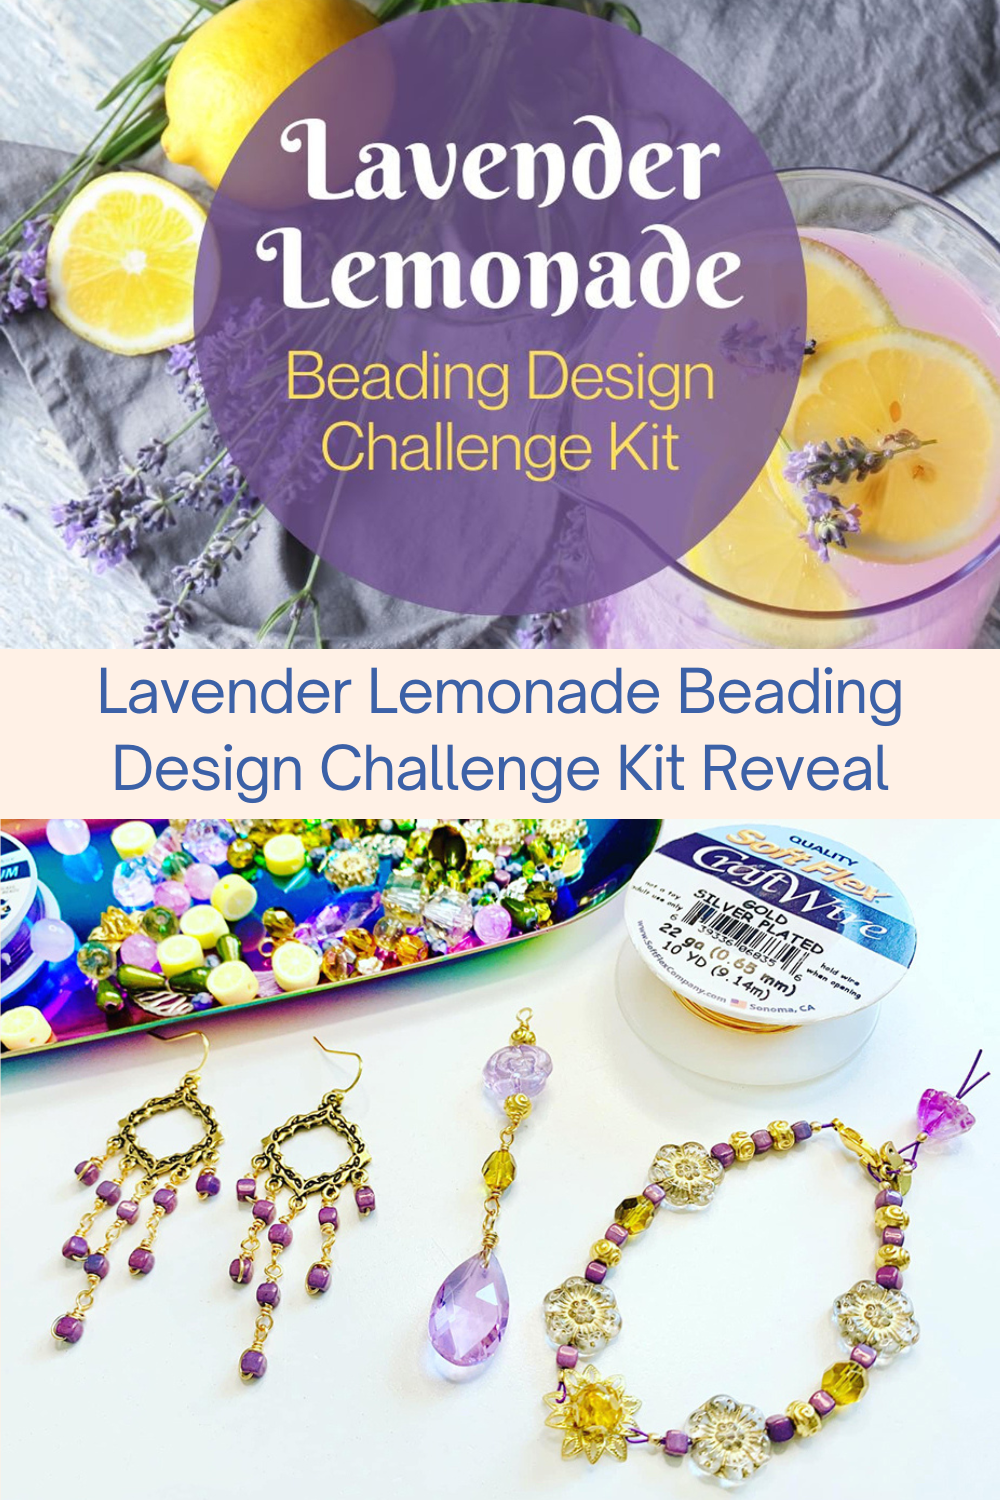 Lavender Lemonade Beading Design Challenge Kit Reveal Collage